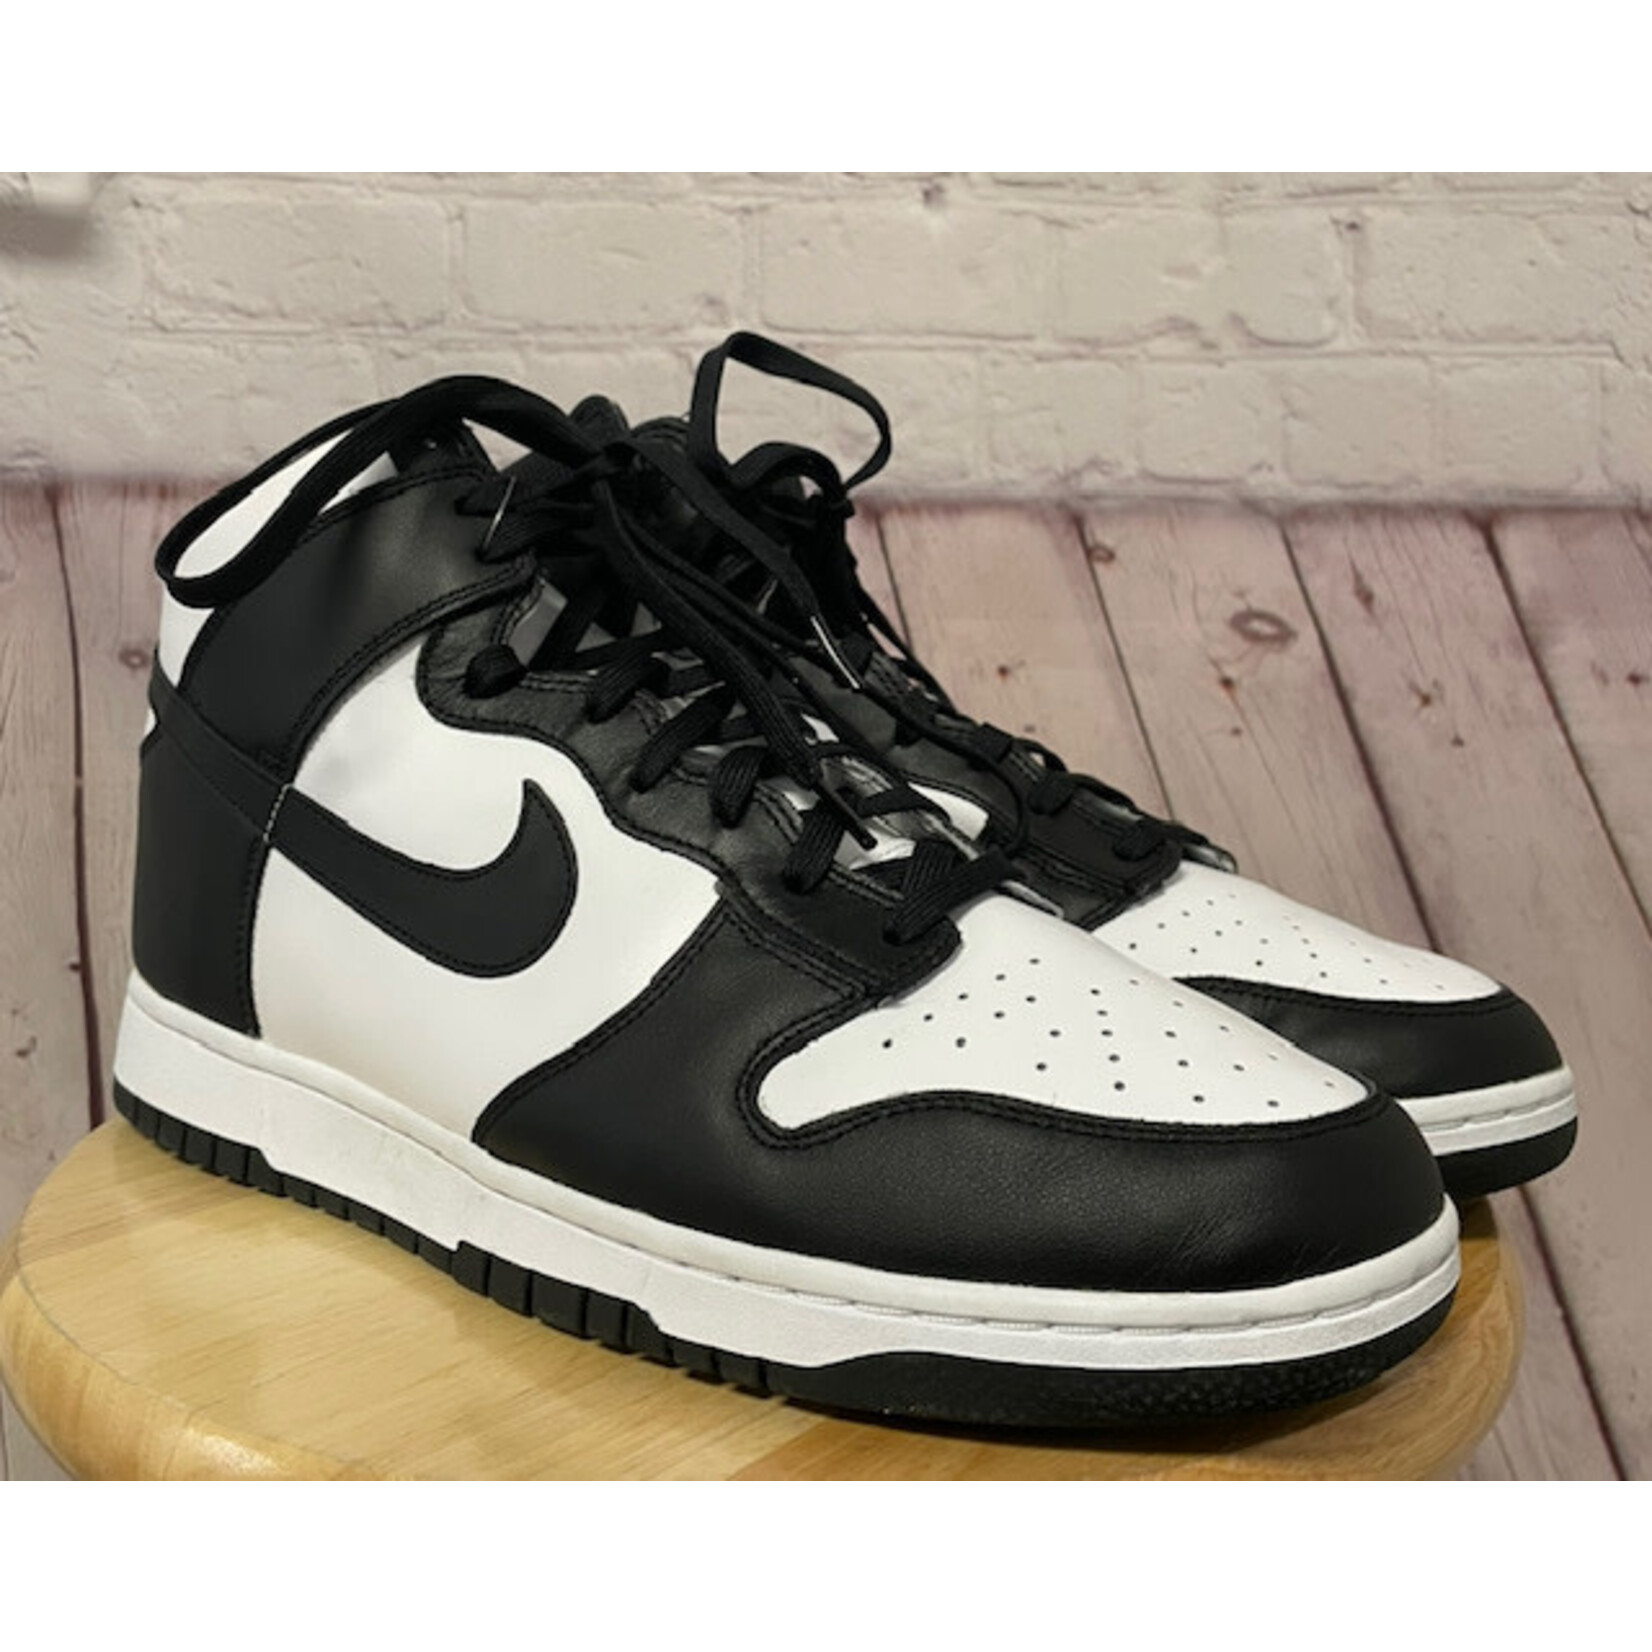 nike Nike Dunk "Panda", Black, White, Hightop, 13